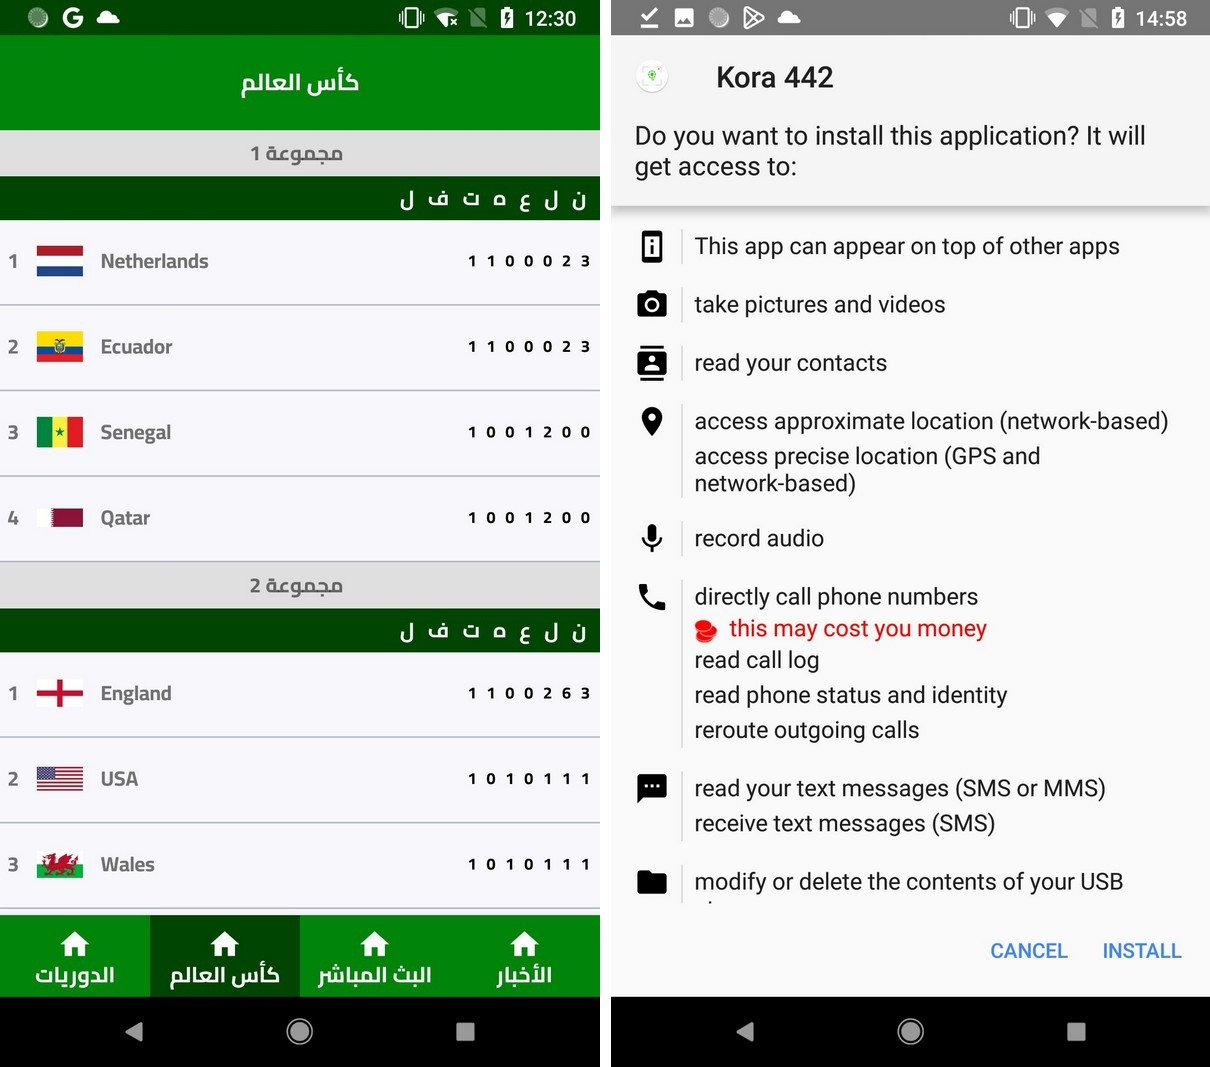 Mã độc mạo danh ứng dụng World Cup 2022, có chức năng lấy cắp tiền trên smartphone người dùng (Ảnh chụp màn hình).